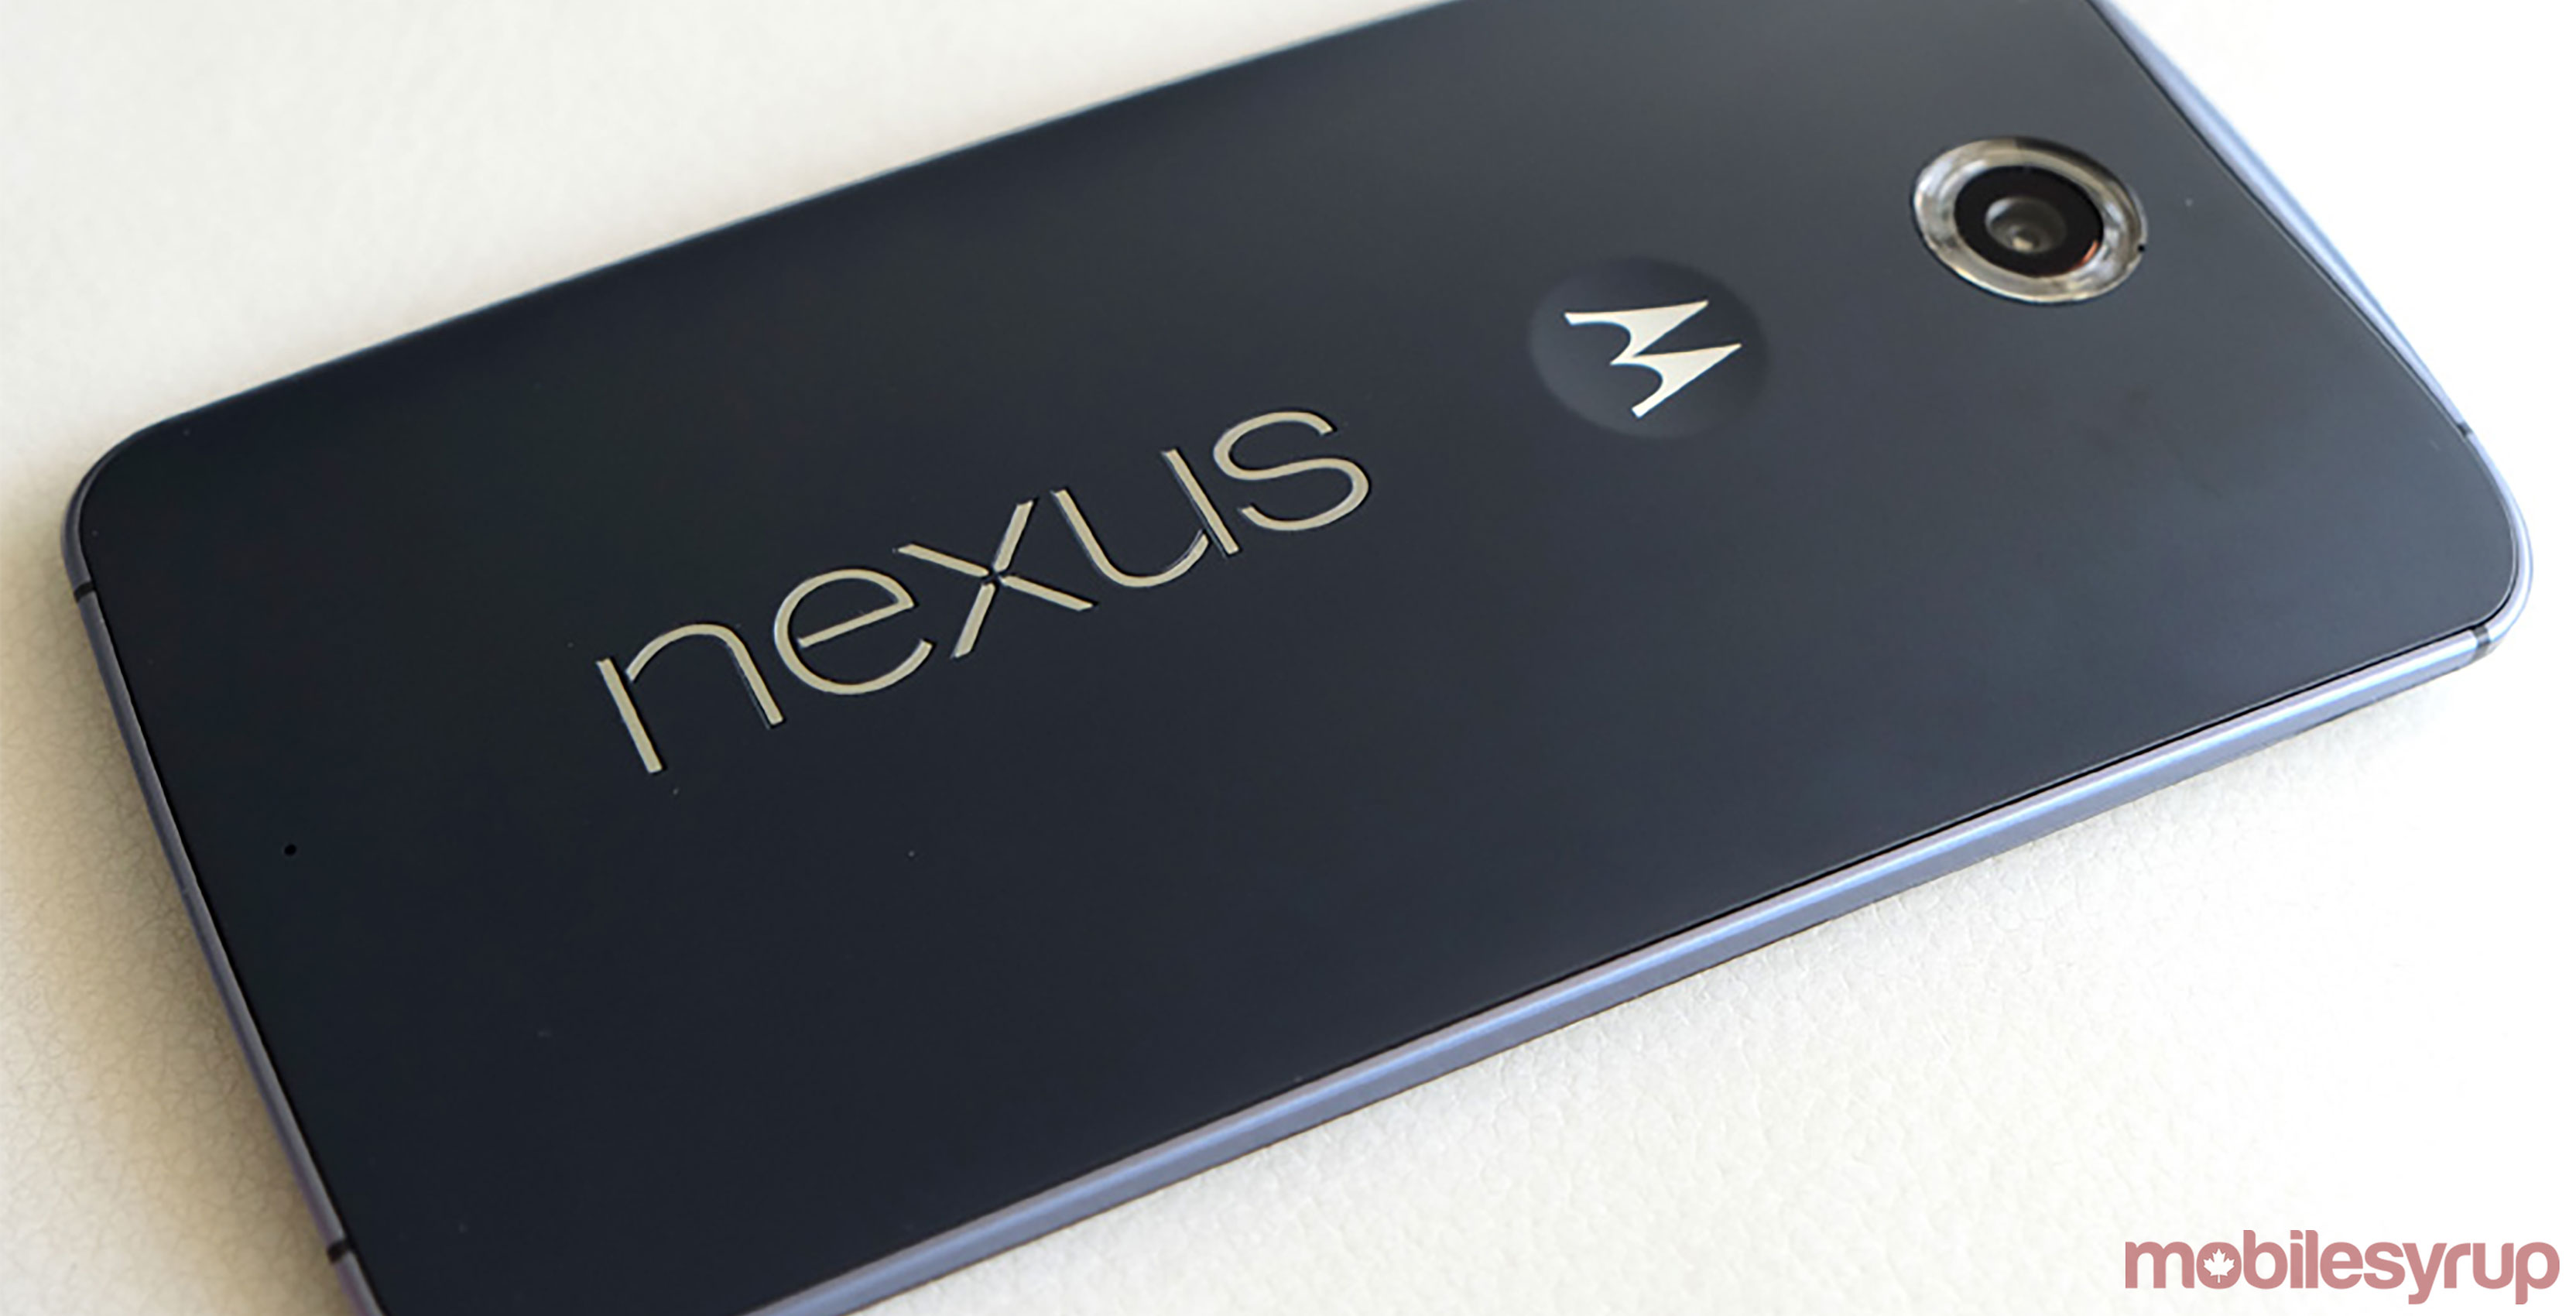 Nexus 6 phone